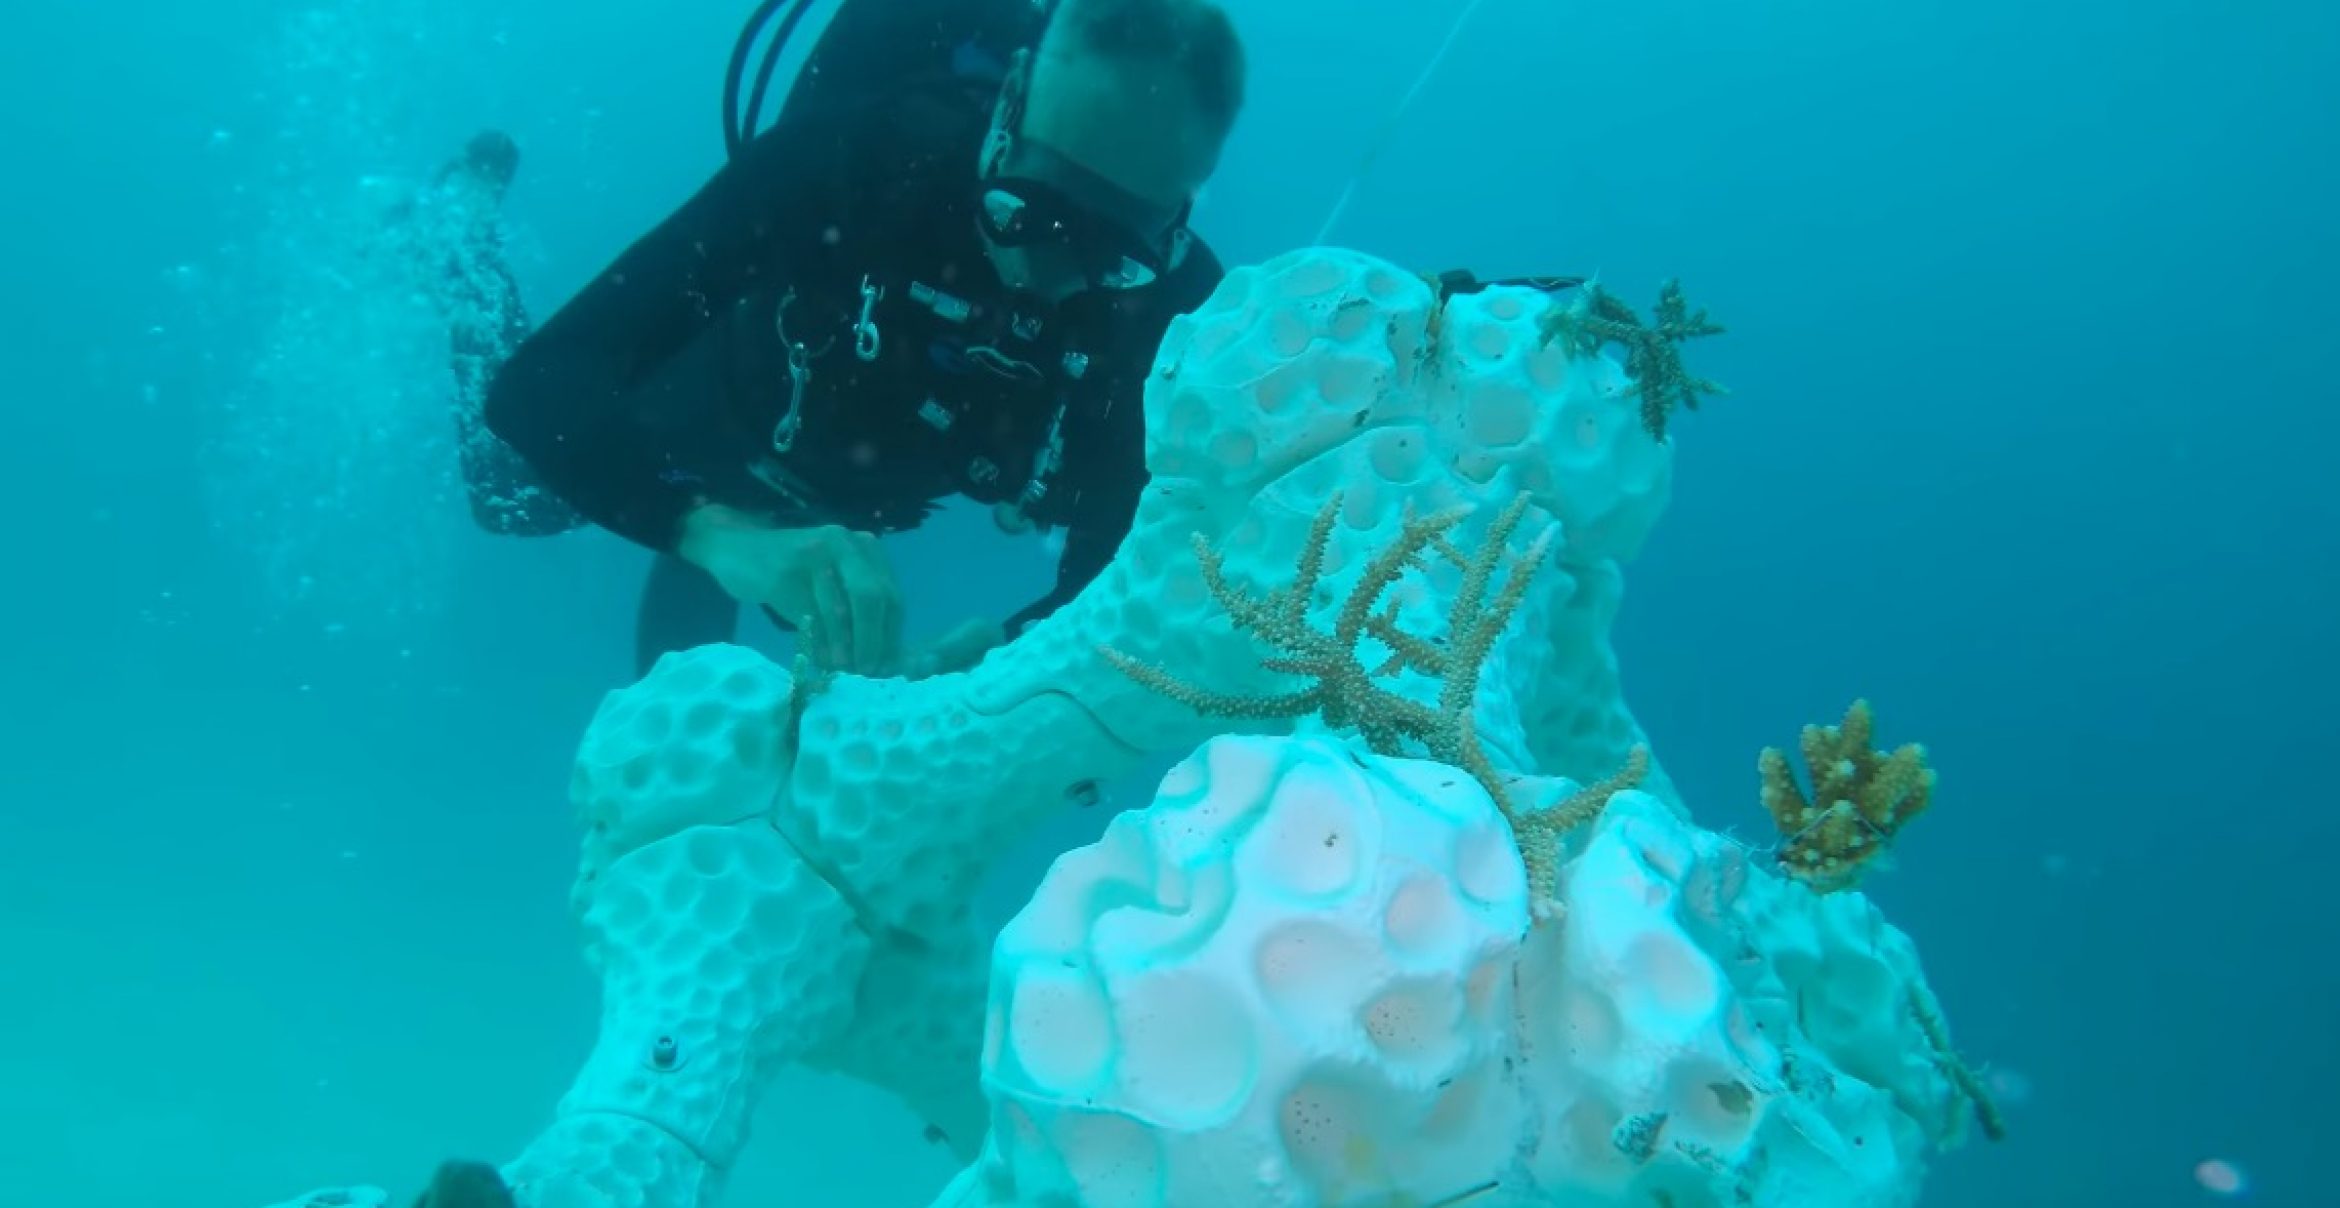 Diese Korallen sind aus Keramik und kommen aus dem 3D-Drucker